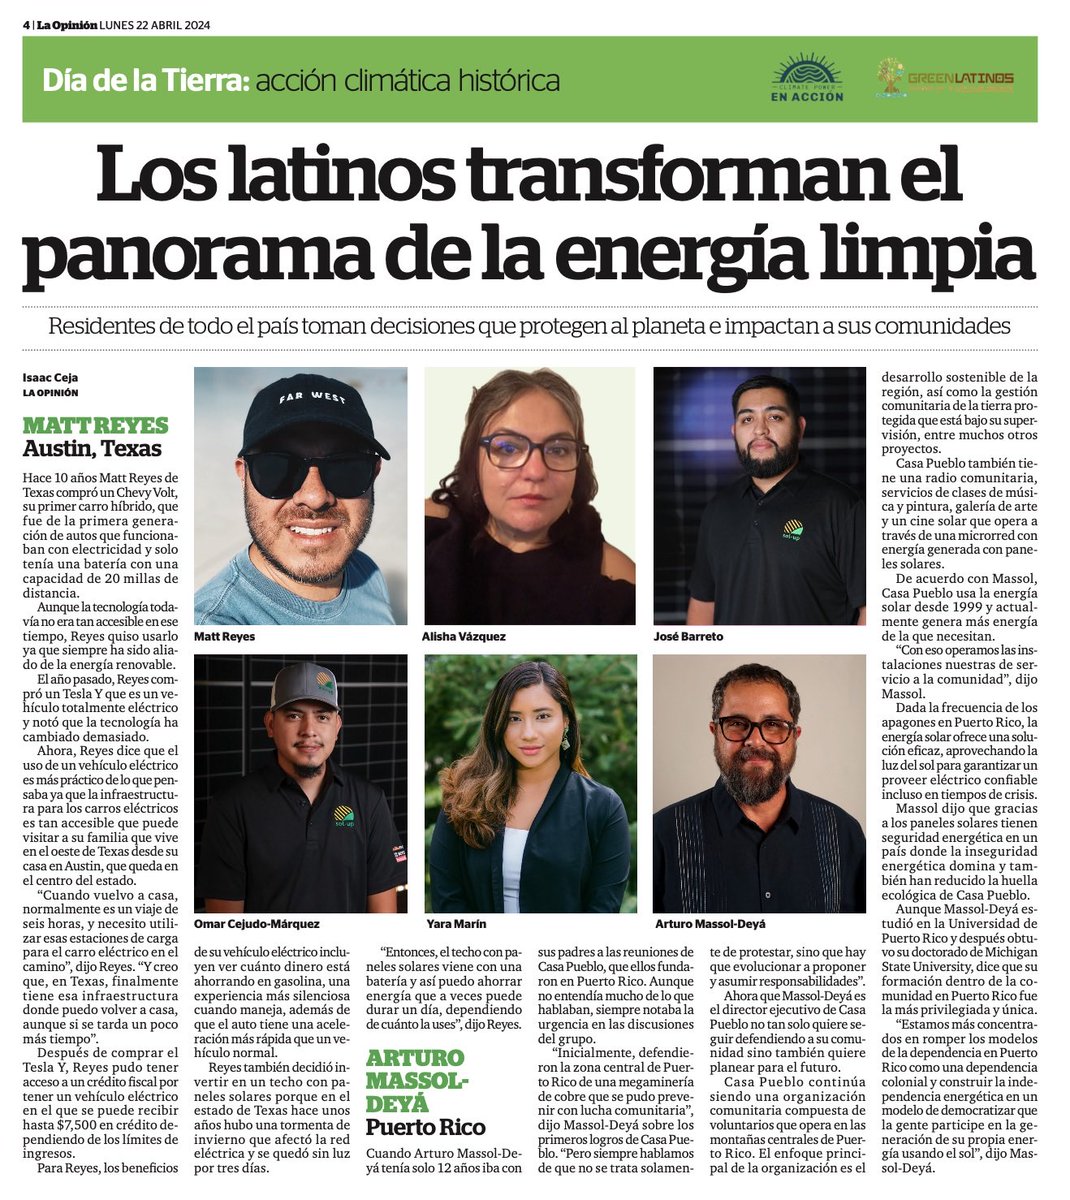 Esta semana en la edición #DiadeLaTierra del periódico @LaOpinionLA en Los Ángeles incluyen a Casa Pueblo. Este enlace te lleva a la edición completa. laopinion.com/wp-content/upl…